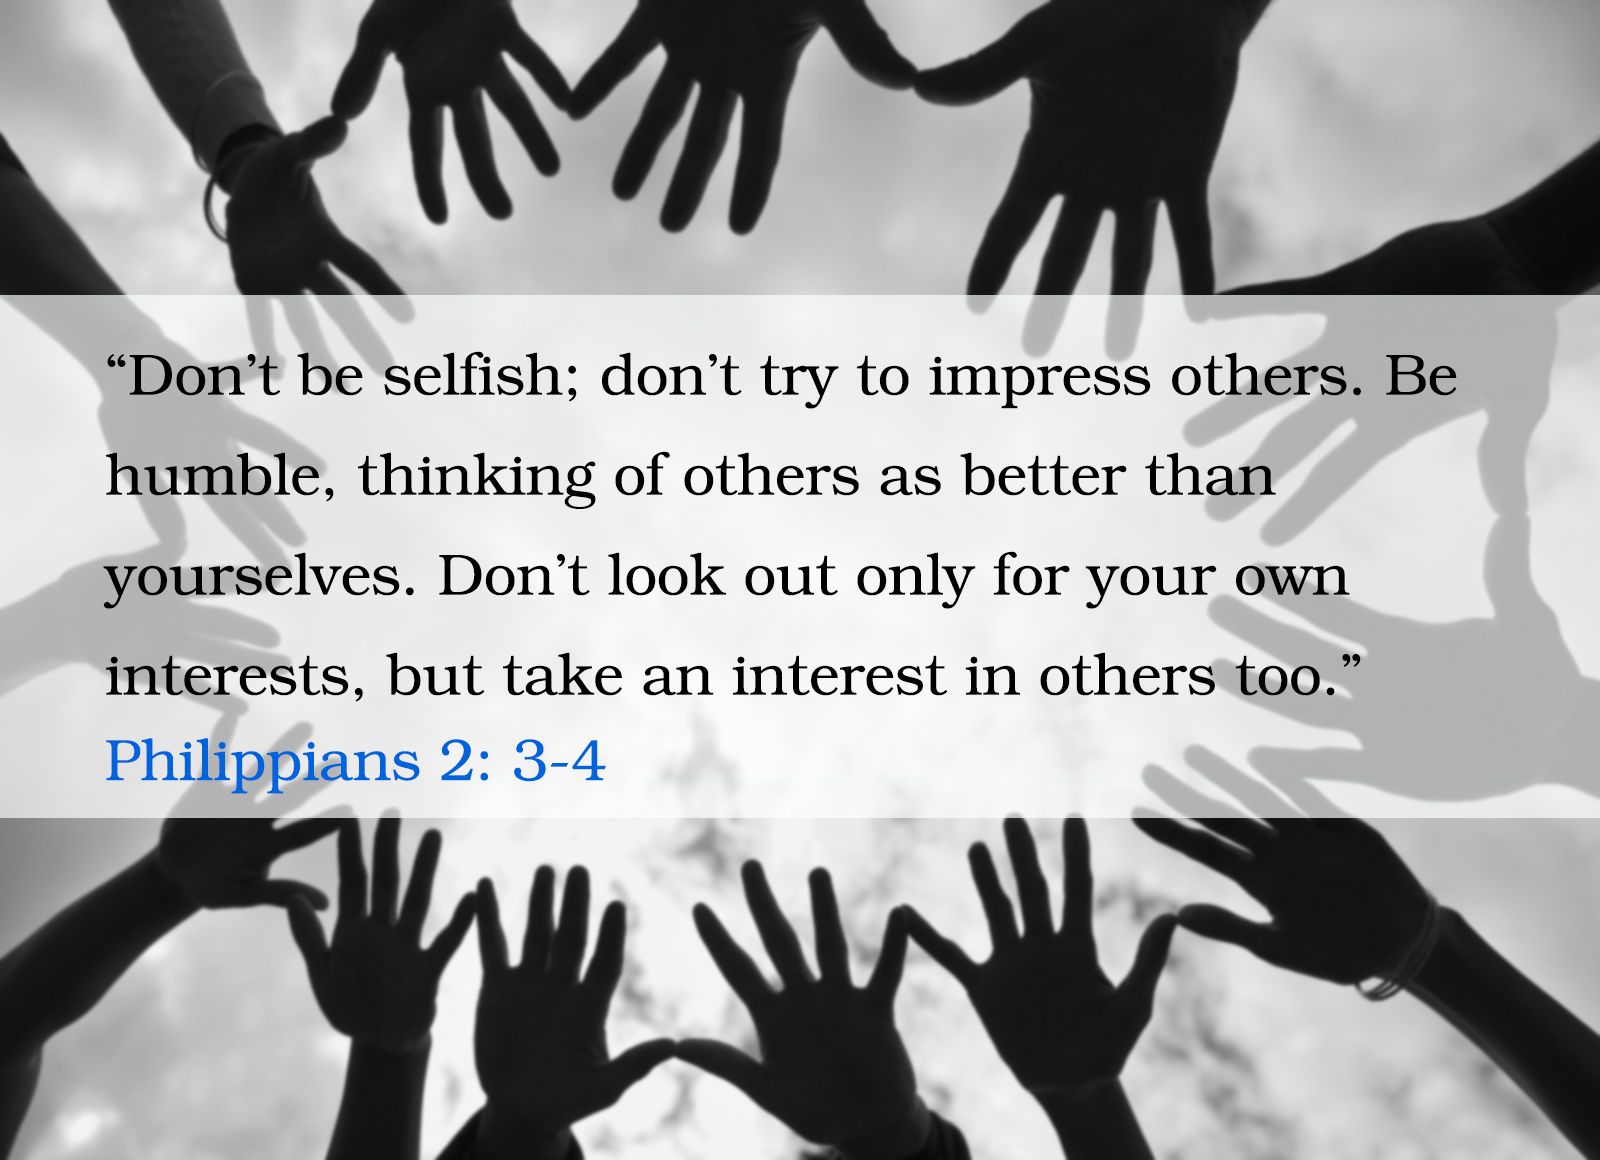 Philippians 2: 3-4 